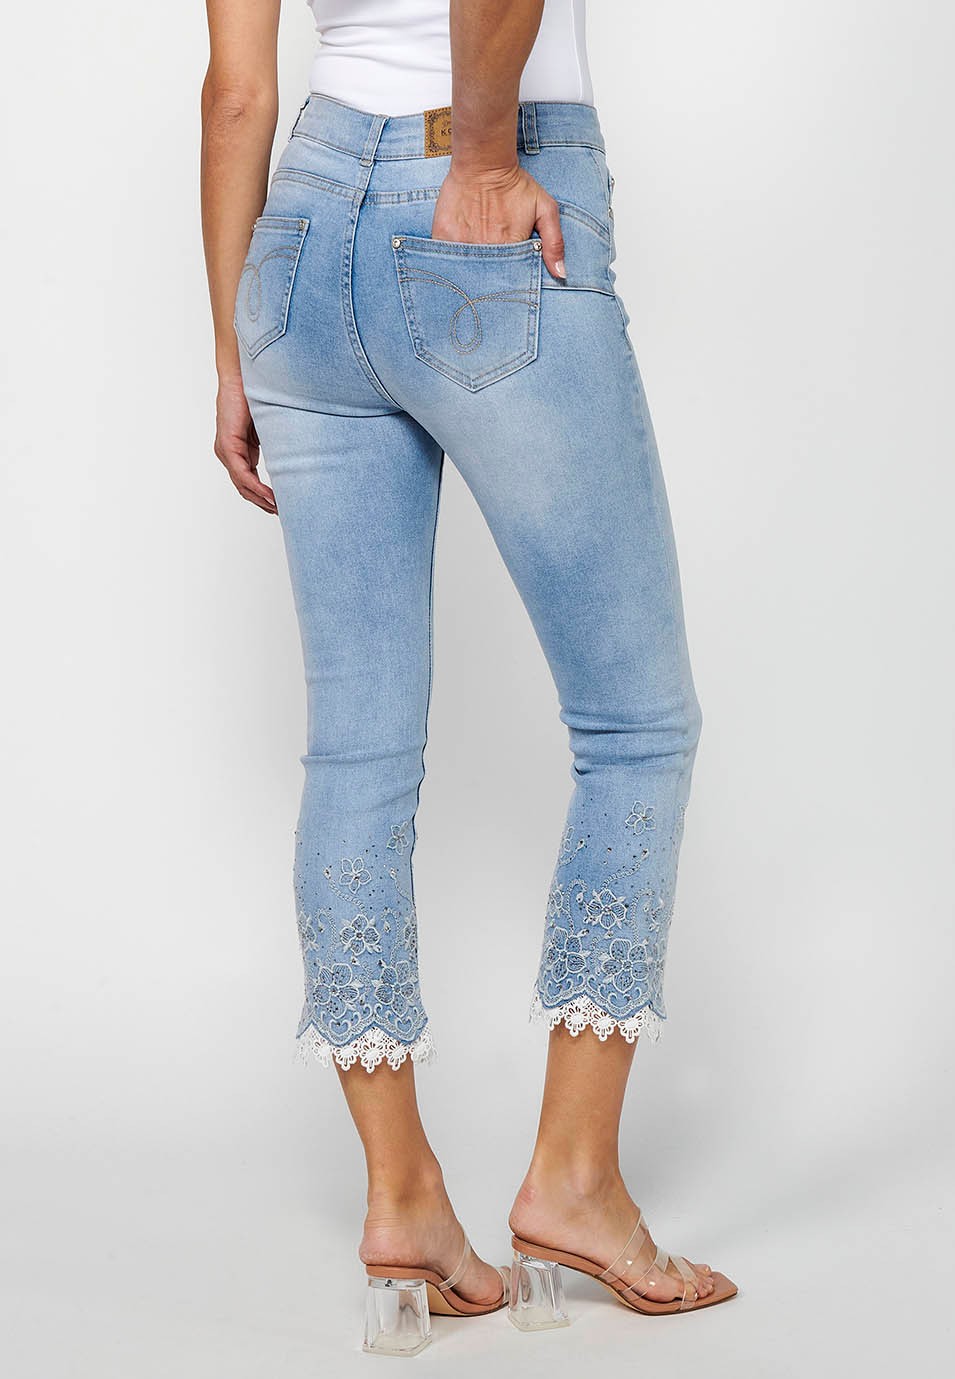 Pantalón largo jeans slim con Cierre delantero con cremallera y Detalles bordados florales de Color Azul claro para Mujer 6